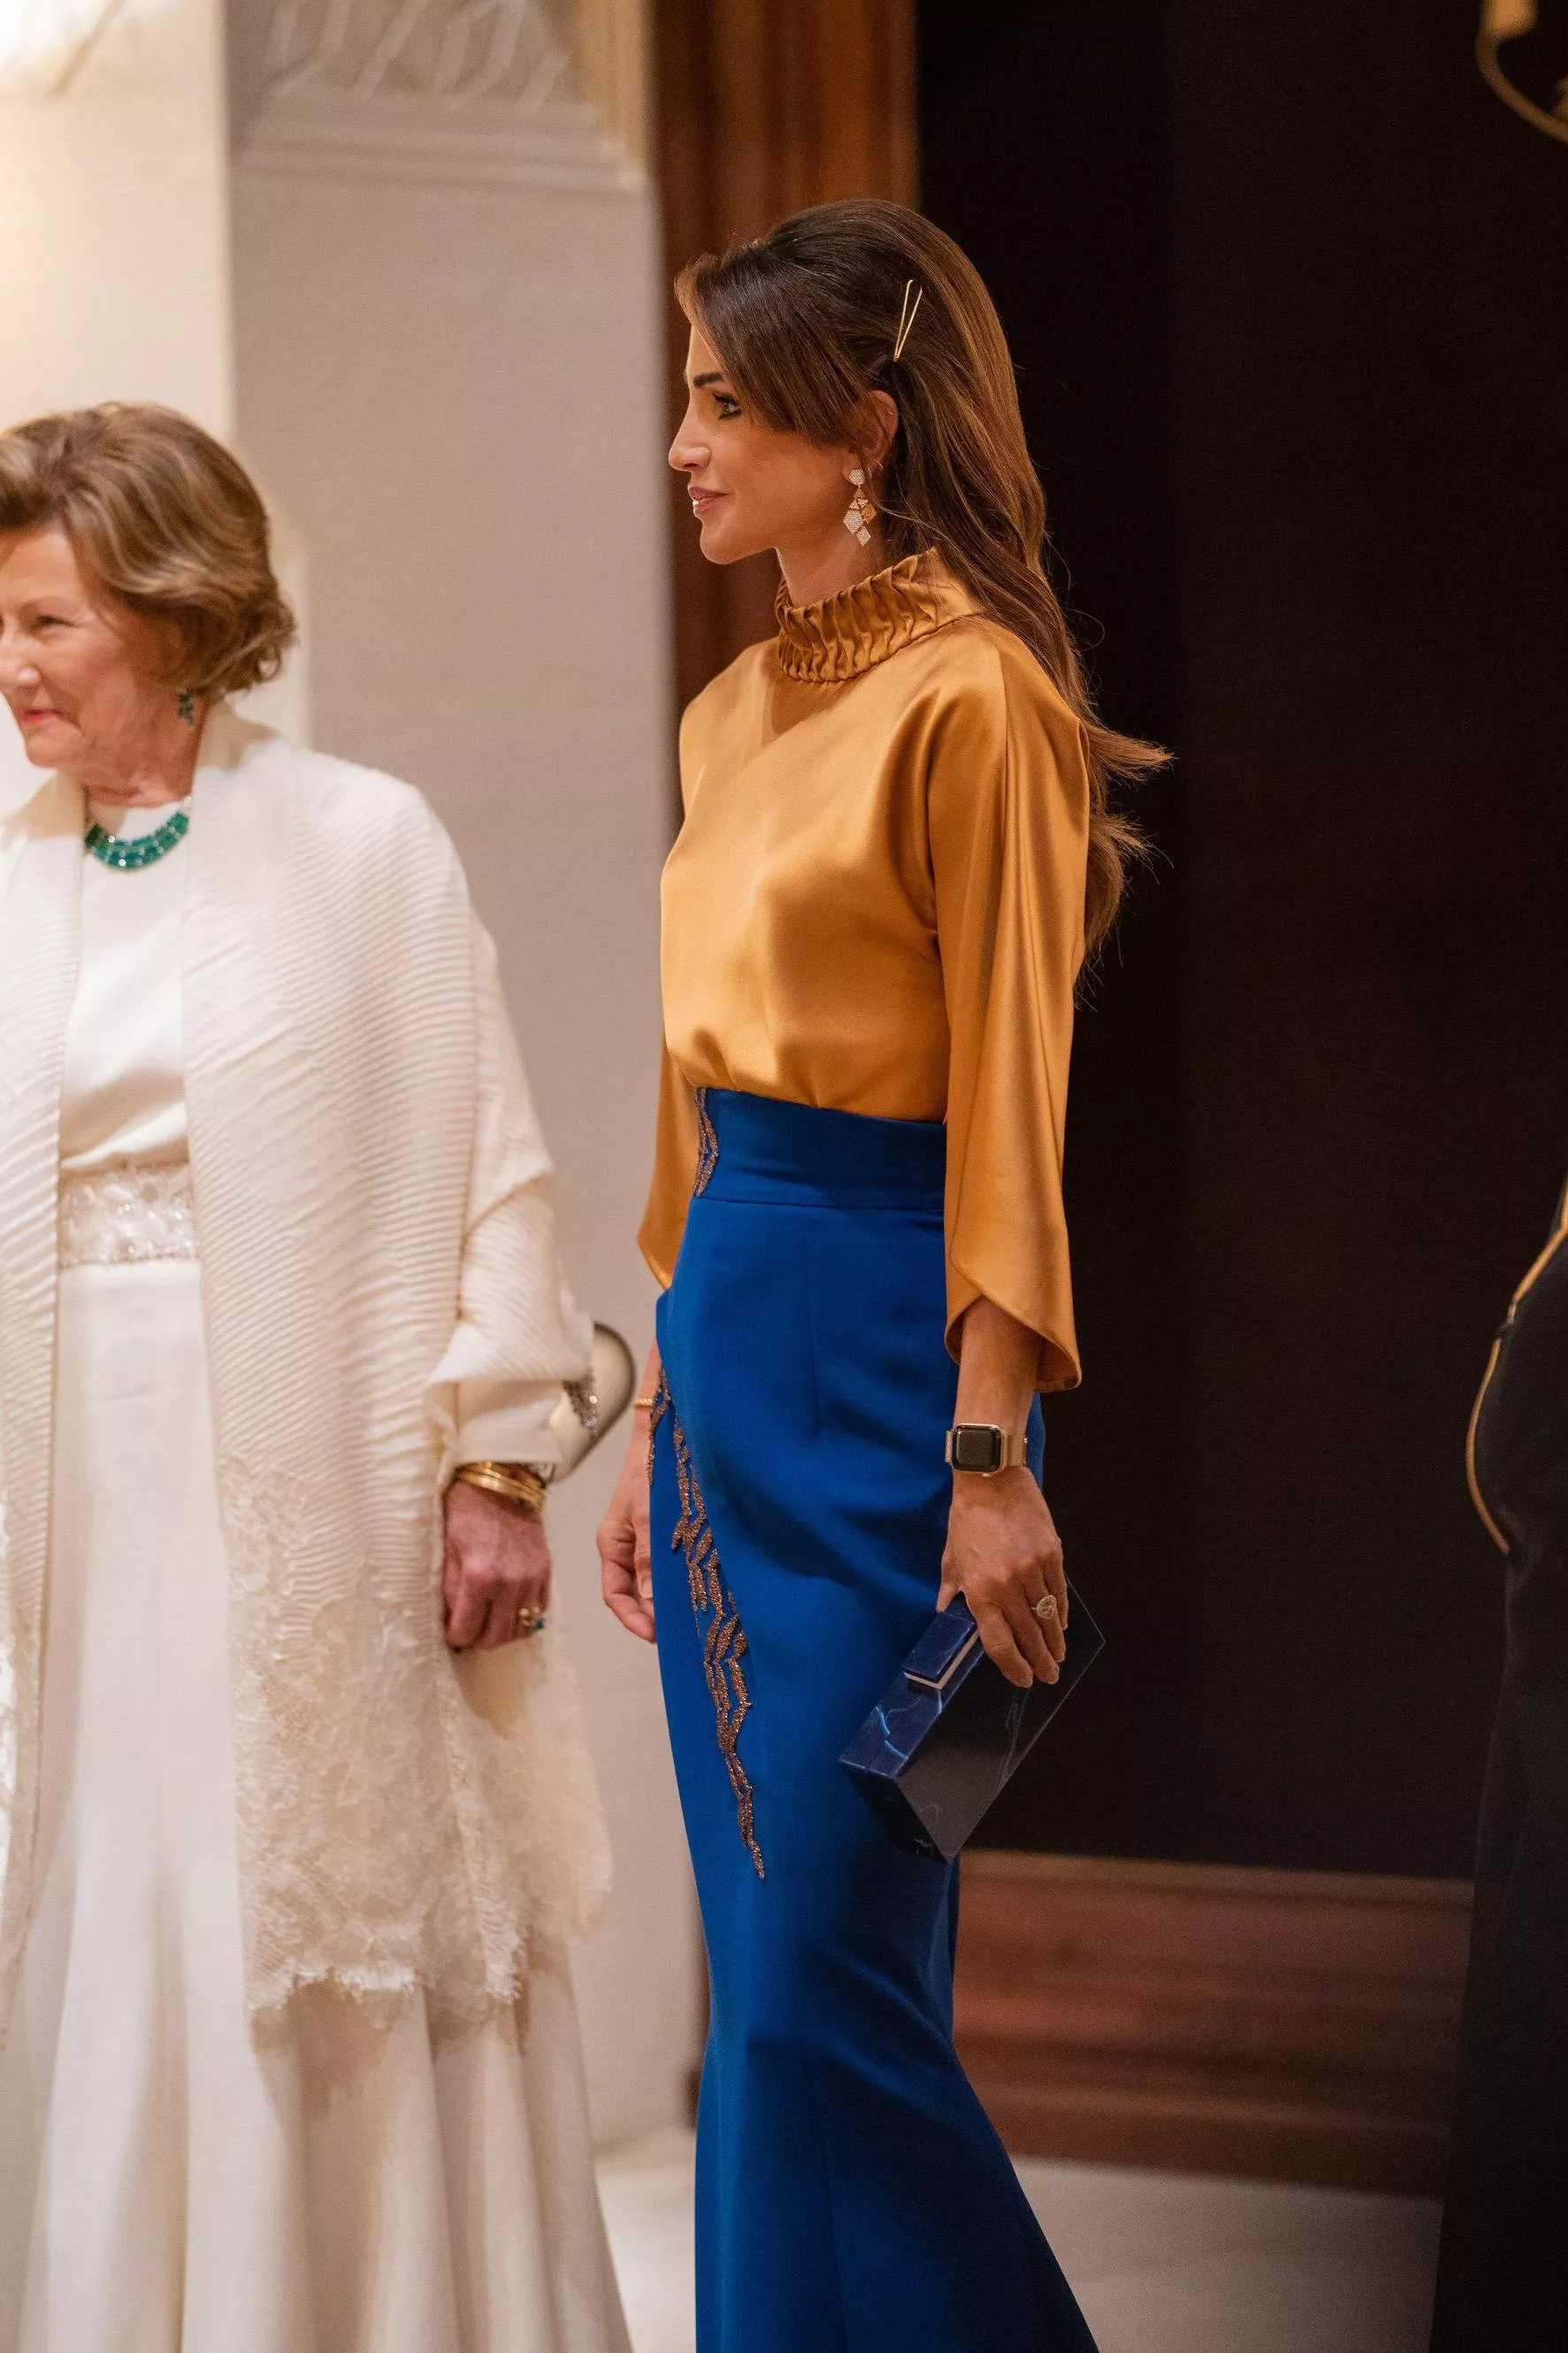 إطلالات الملكة رانيا خلال زيارة ملك وملكة النرويج إلى الأردن